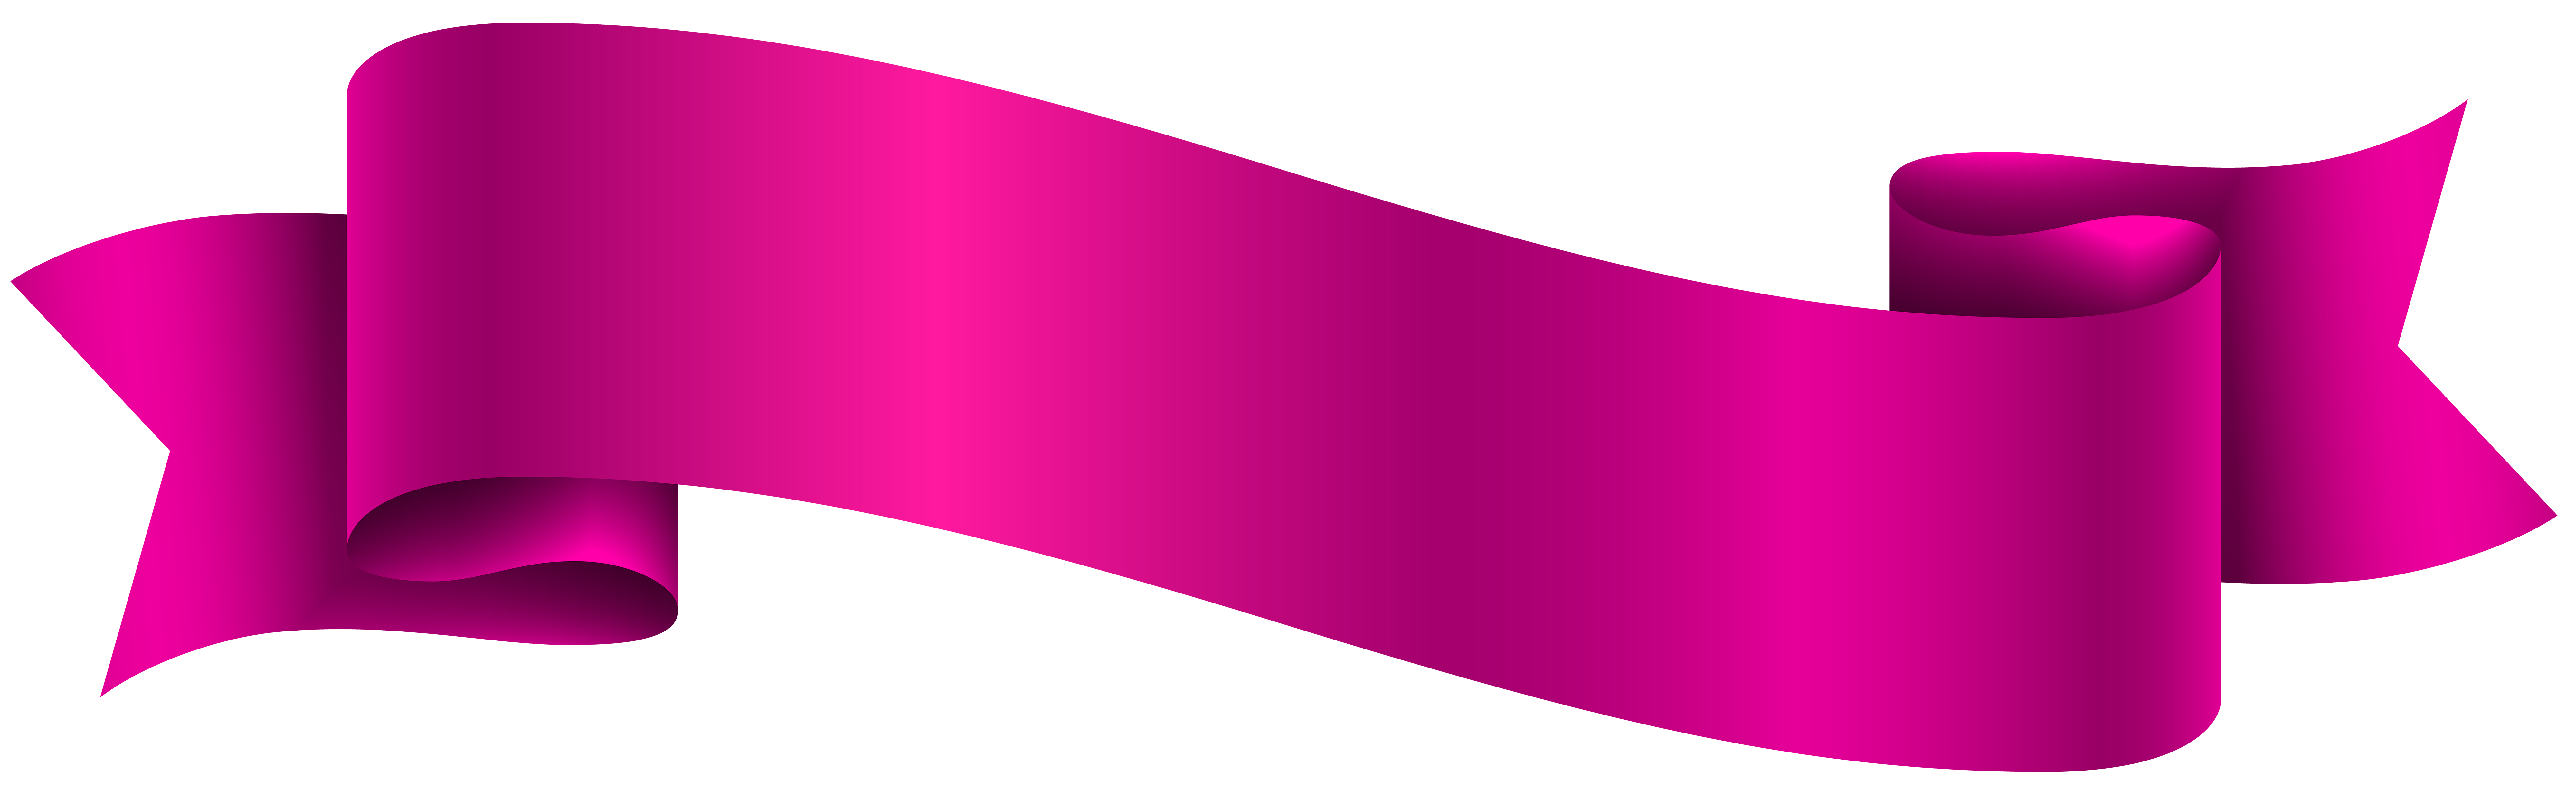 Banner violeta PNG imagen de alta calidad